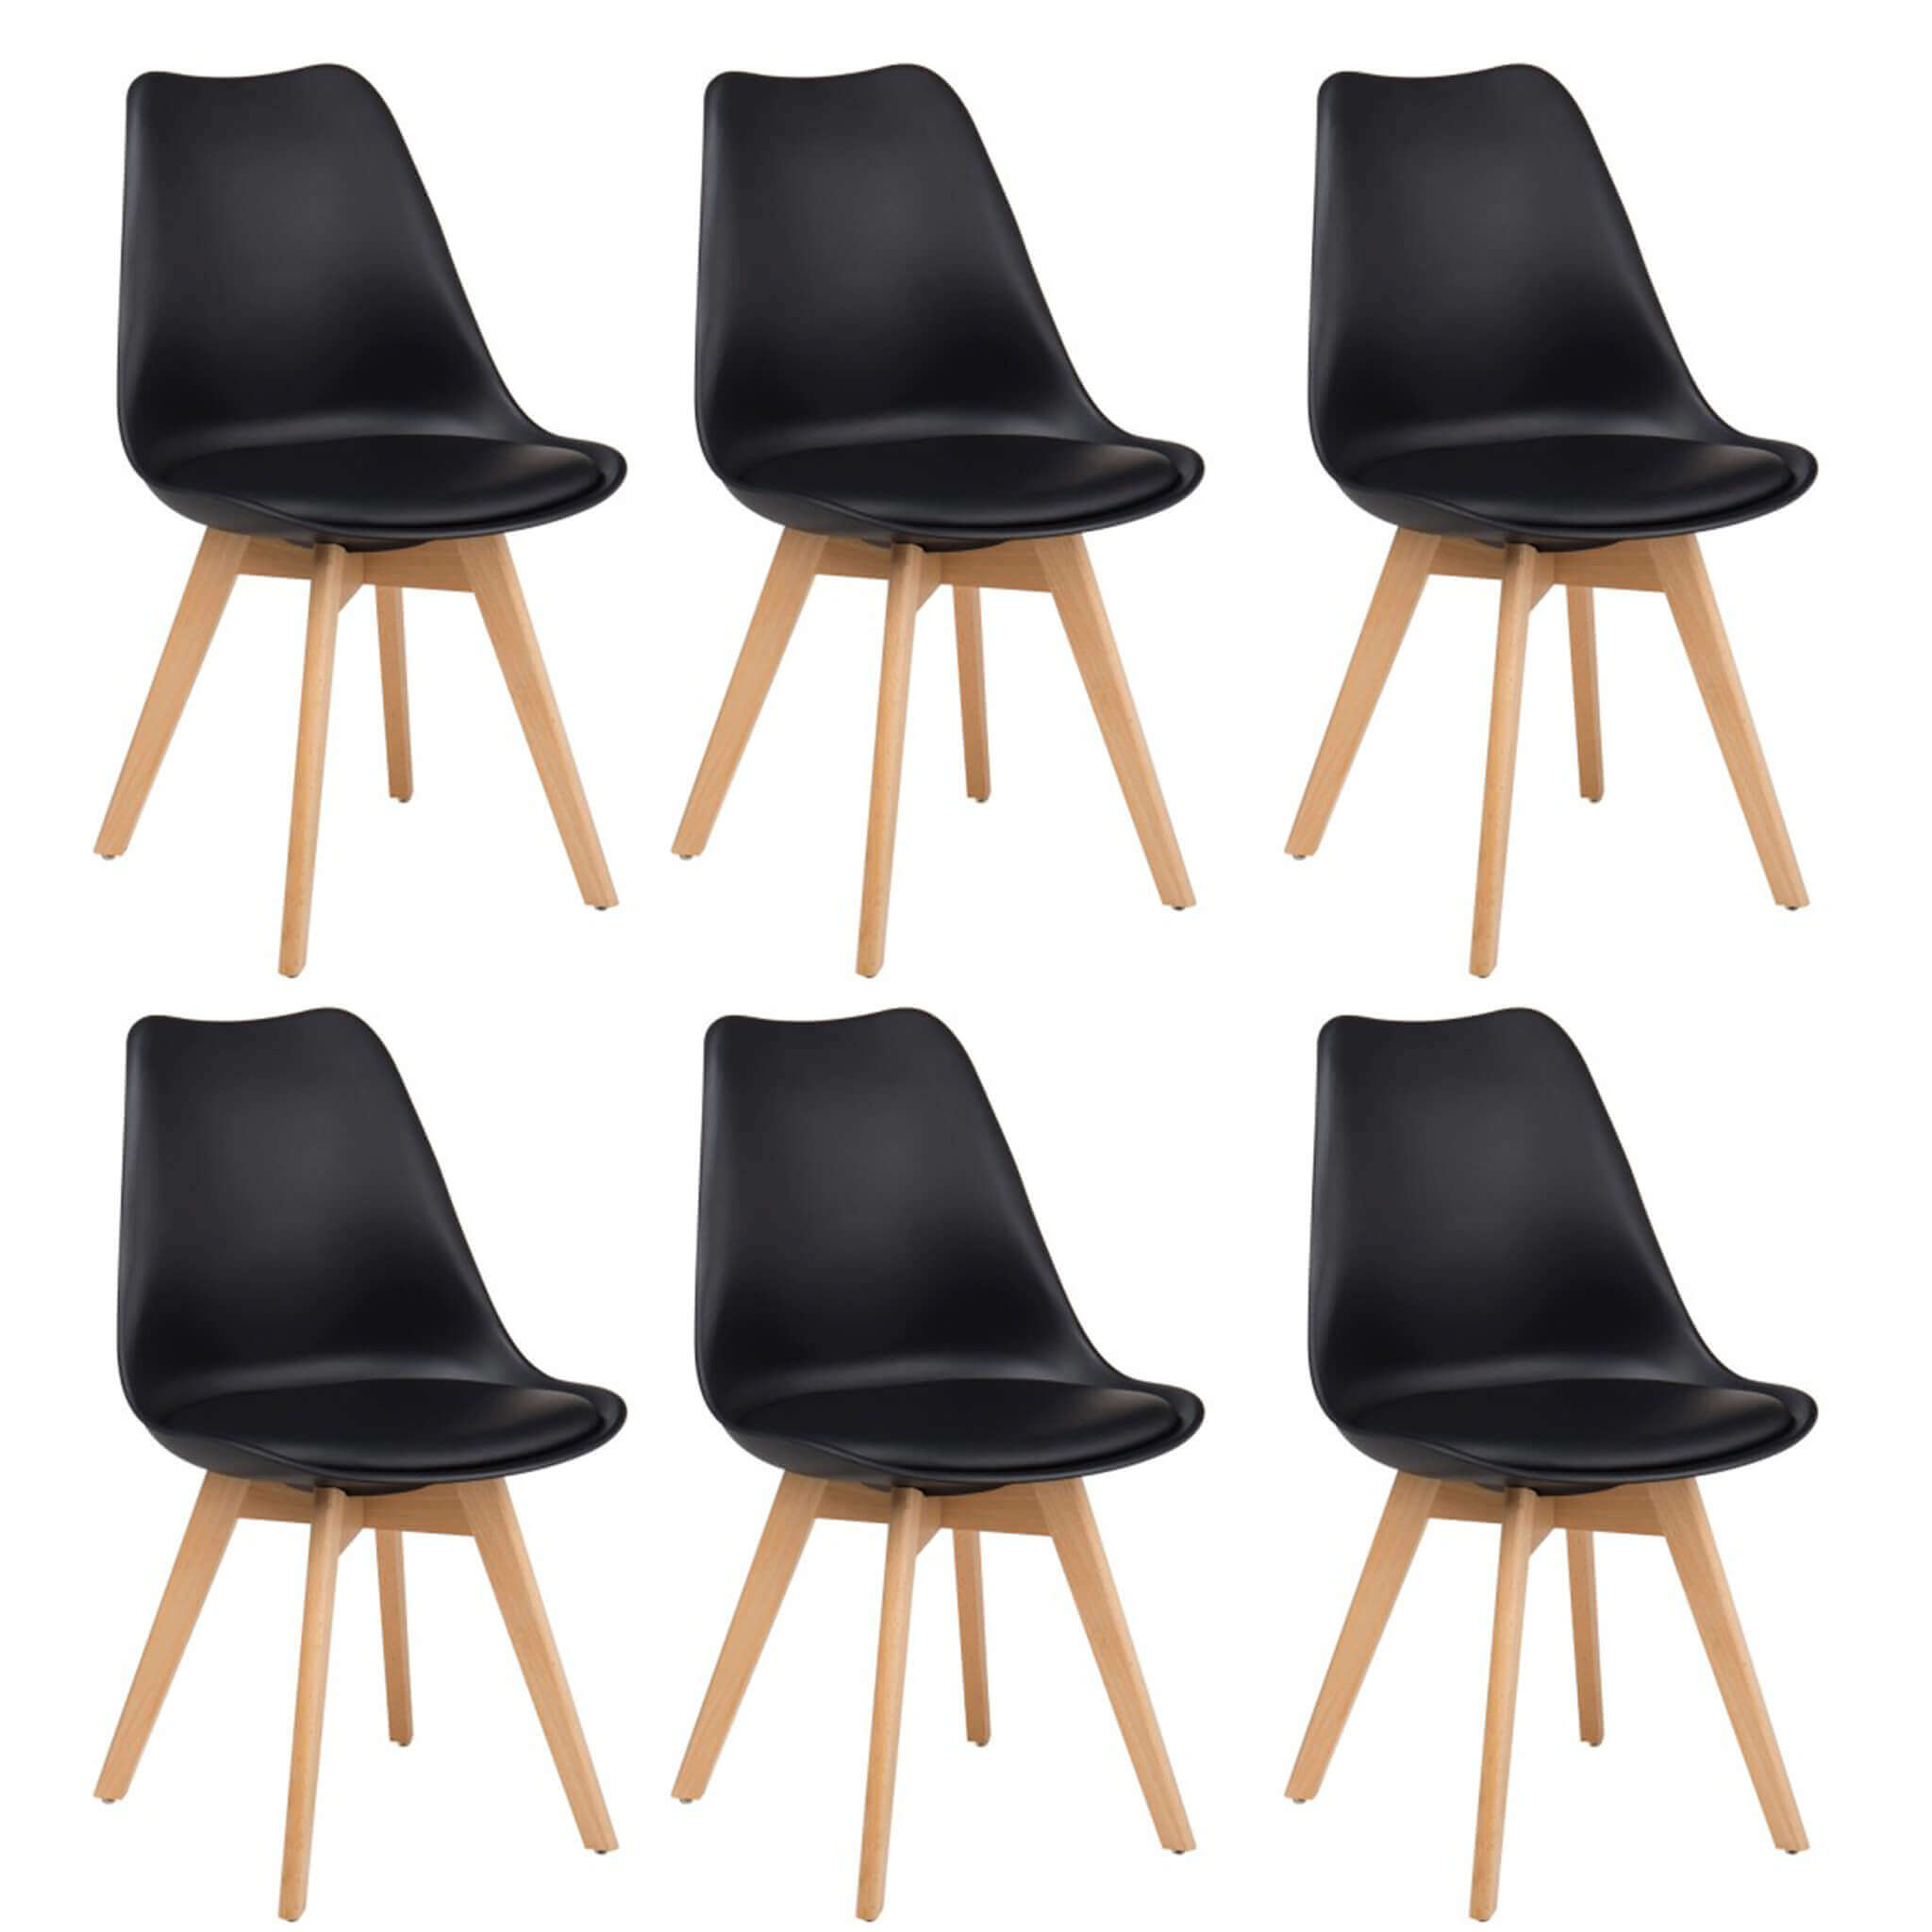 Set 6 sedie moderne in tessuto nero cucina sala soggiorno W624/MX6